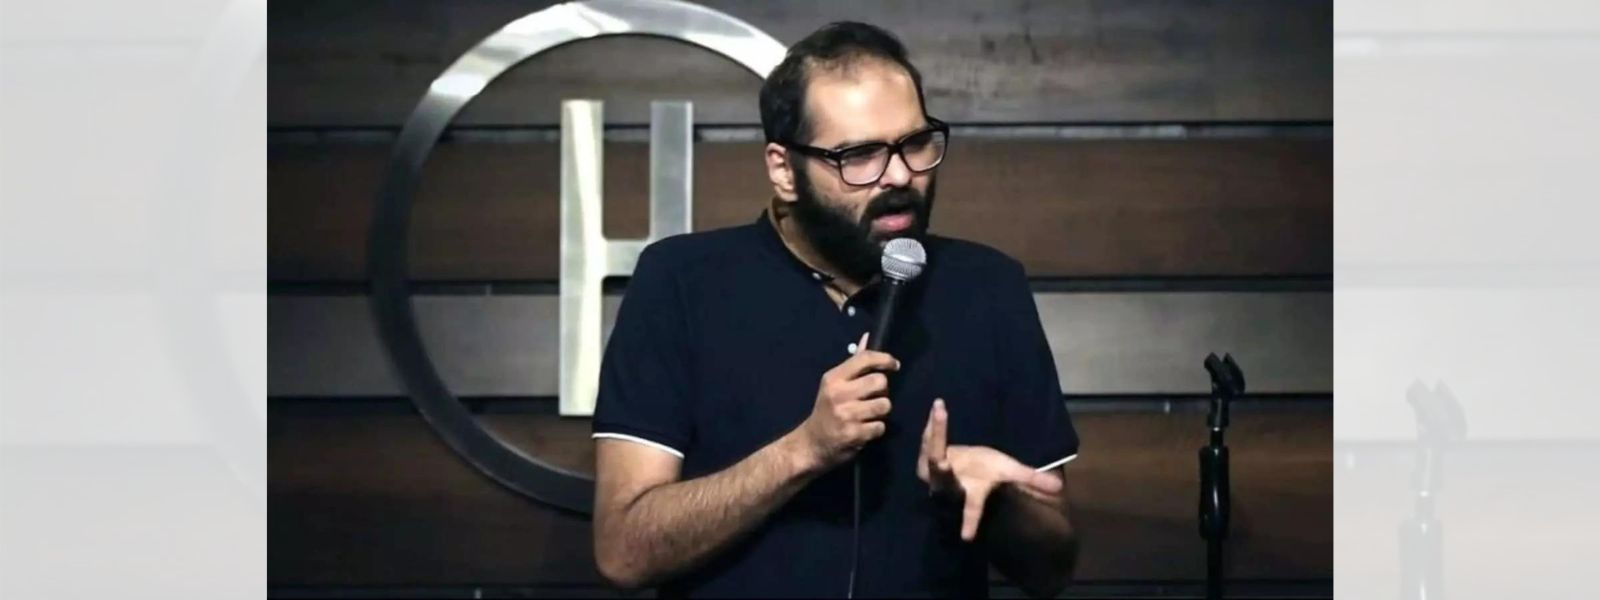 Comedian challenges Indian Govt social media law